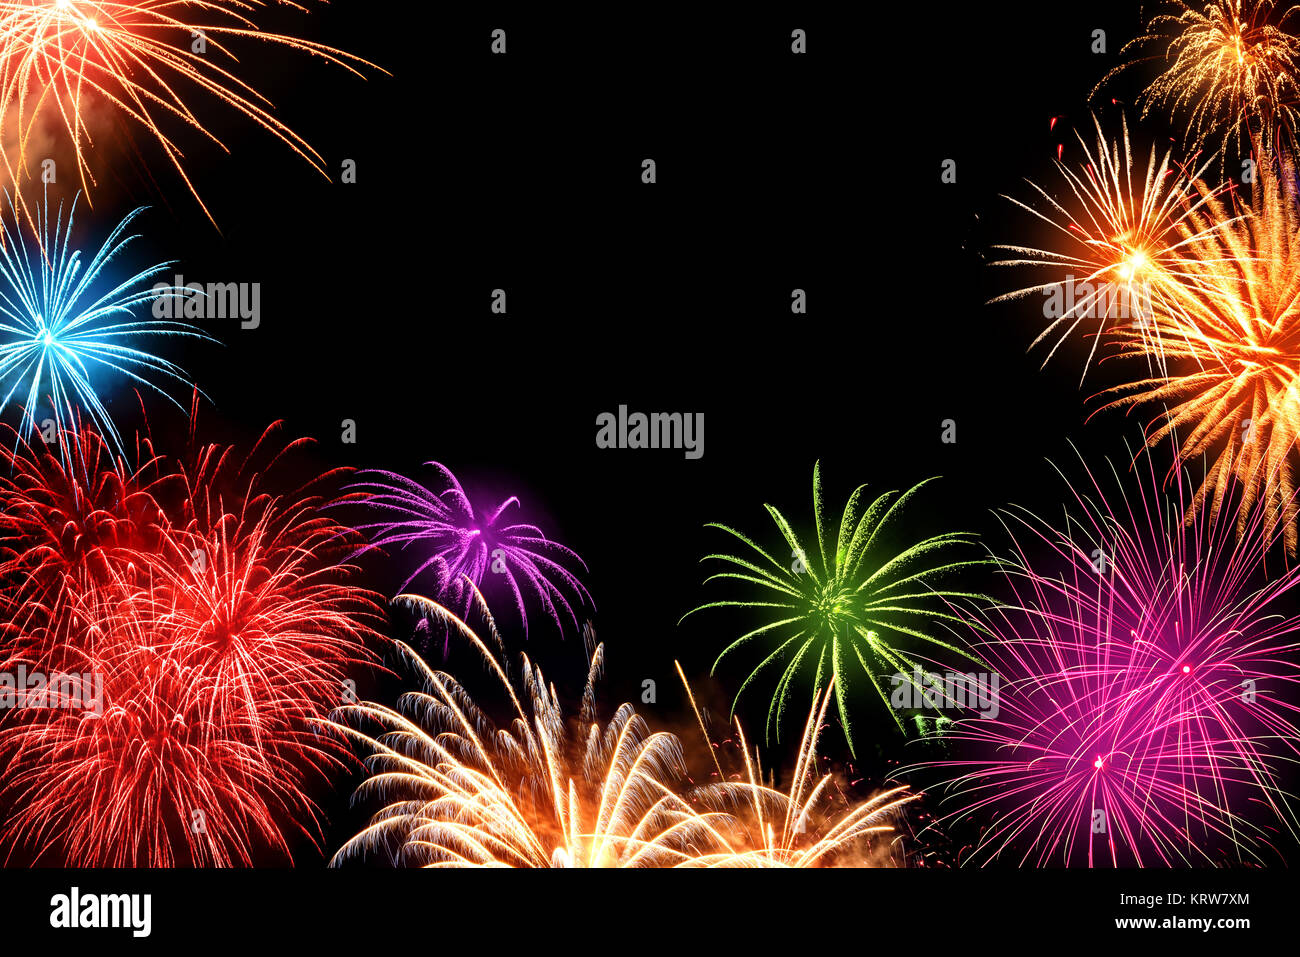 Splendida multi-colore di fuochi d'artificio come un bordo su sfondo nero, ideale per il Nuovo Anno o altri eventi celebrativi Foto Stock